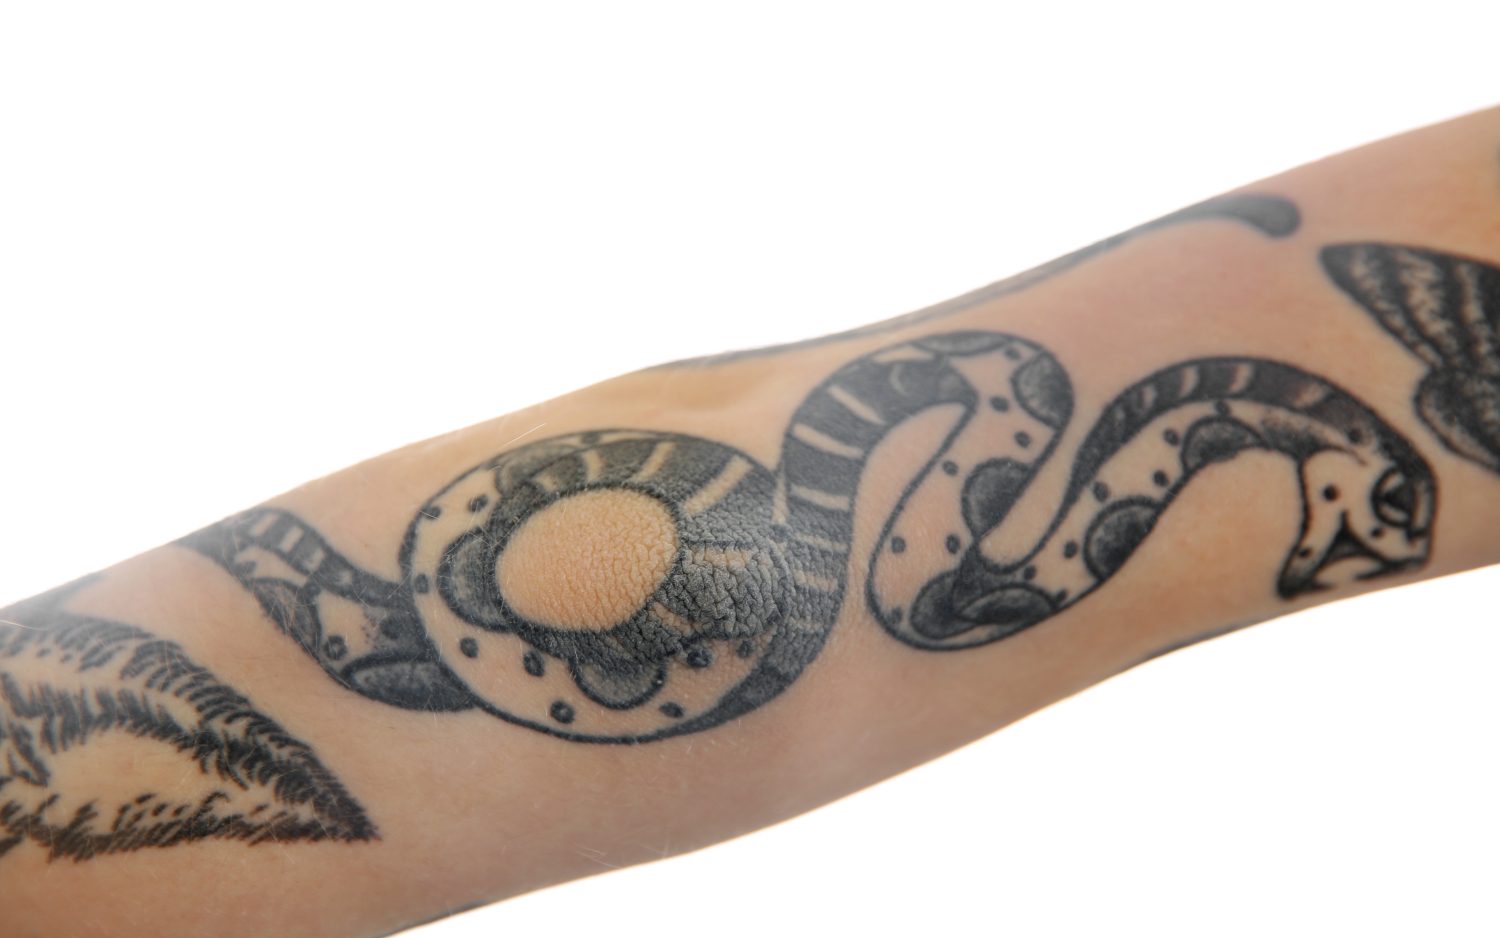 Tatuaggio serpente sul braccio femminile su sfondo bianco